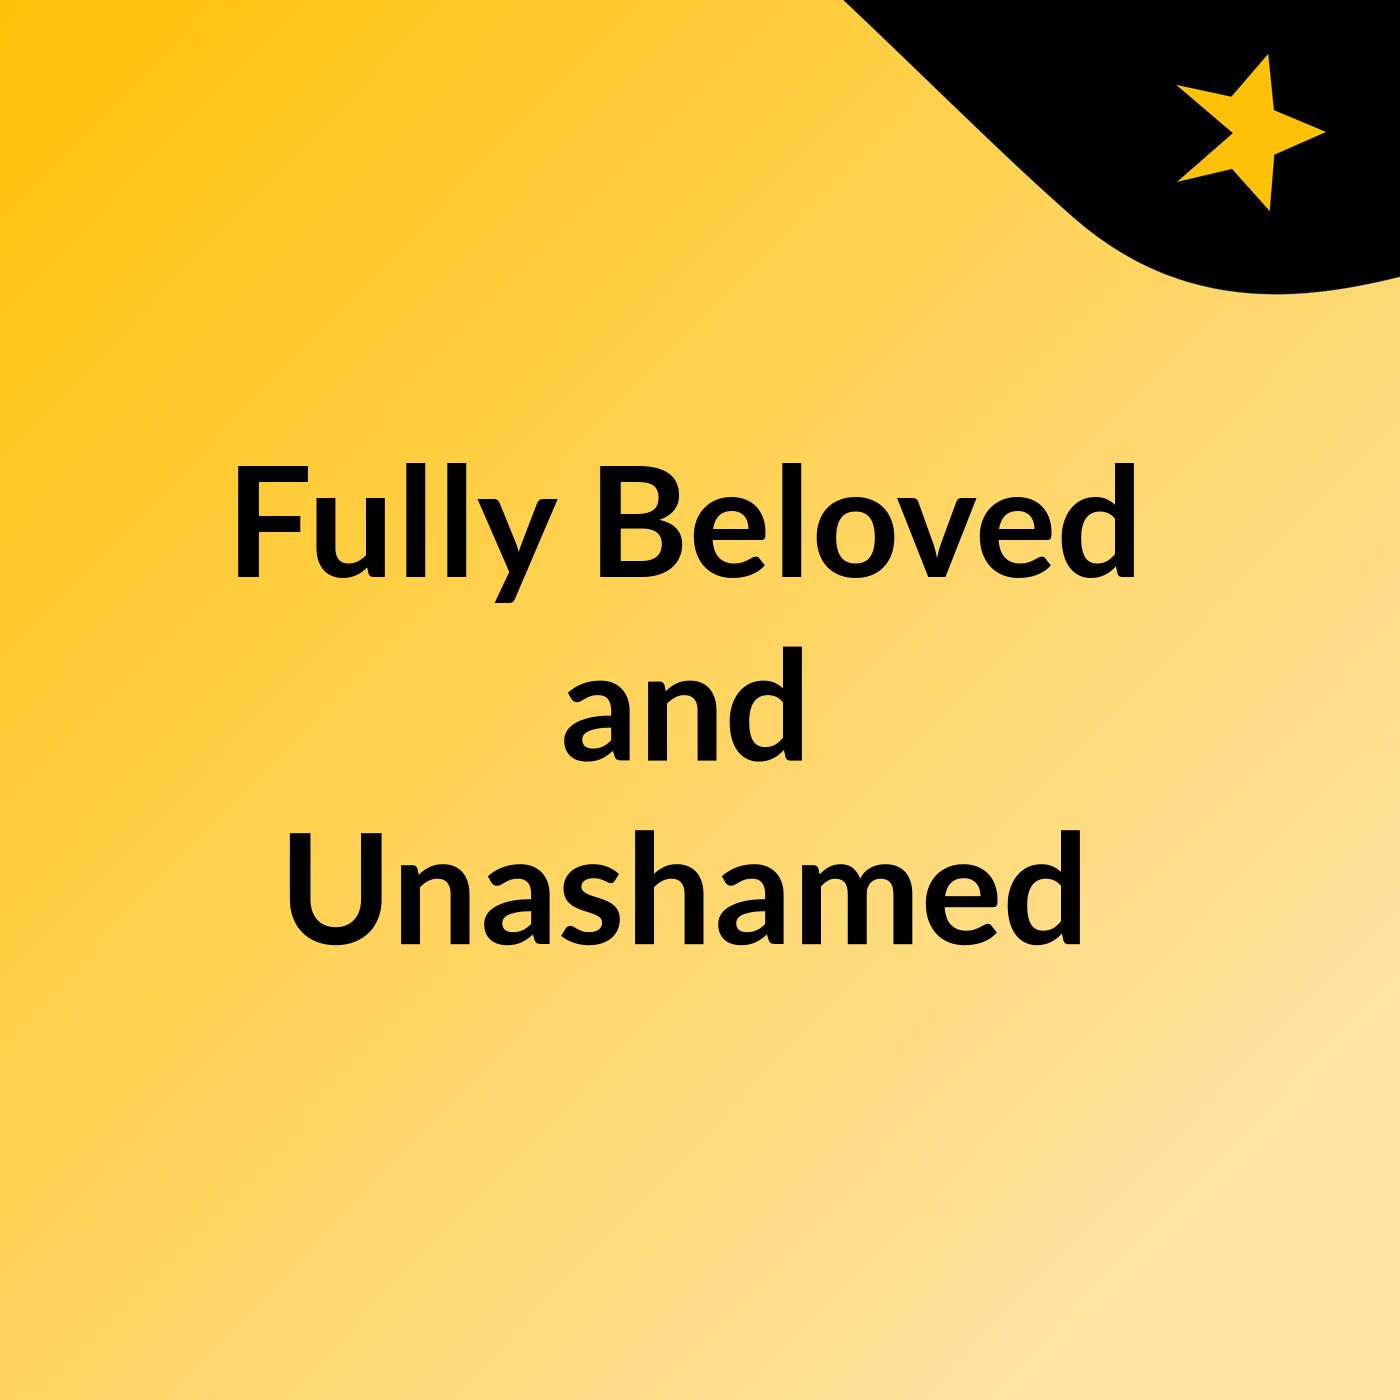 Fully Beloved and Unashamed